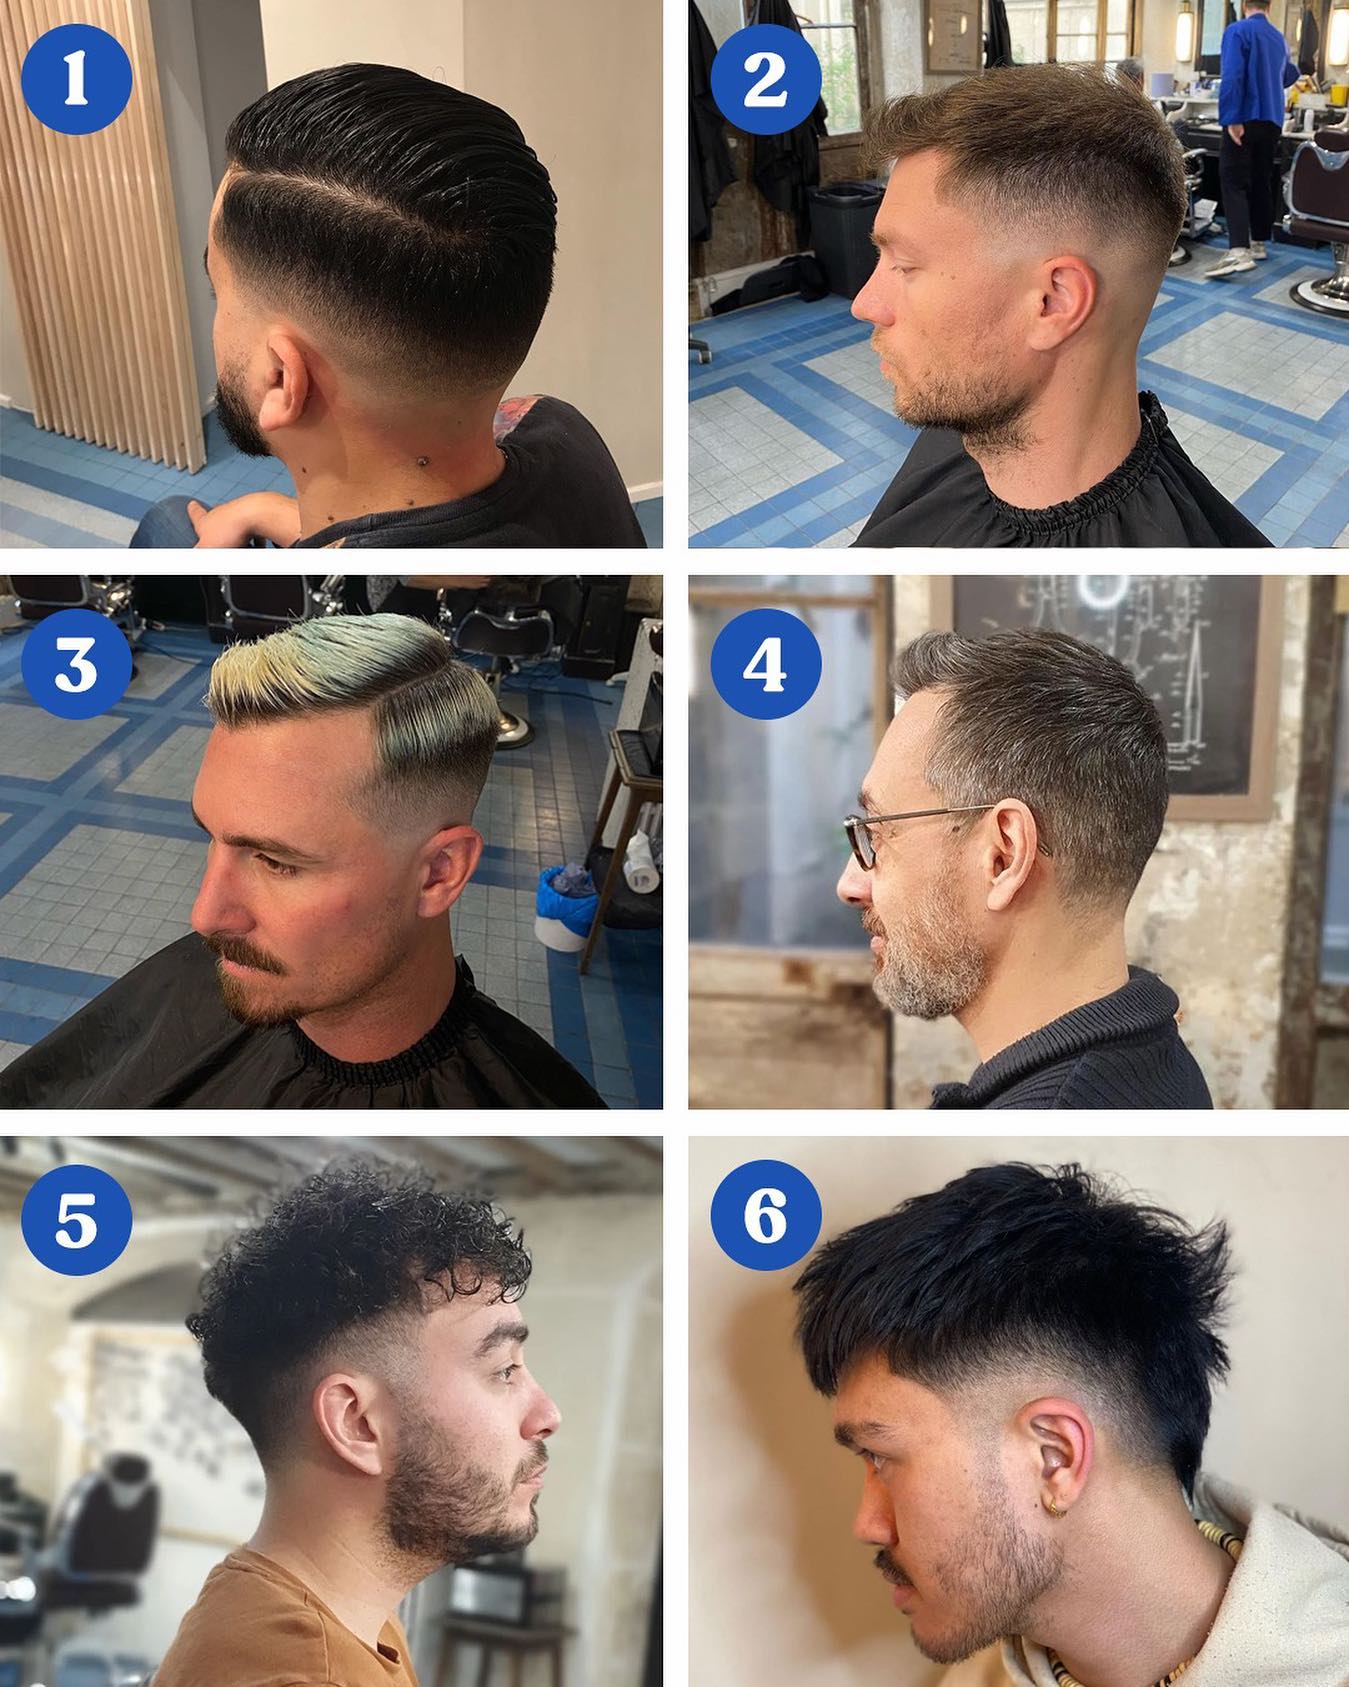 Une petite préférence ? 💙
Dites-nous en commentaire 🔥 

#bigmoustache #barbier #barbierparis #coiffeurparis #barbershopparis #barbershop #haircut #men